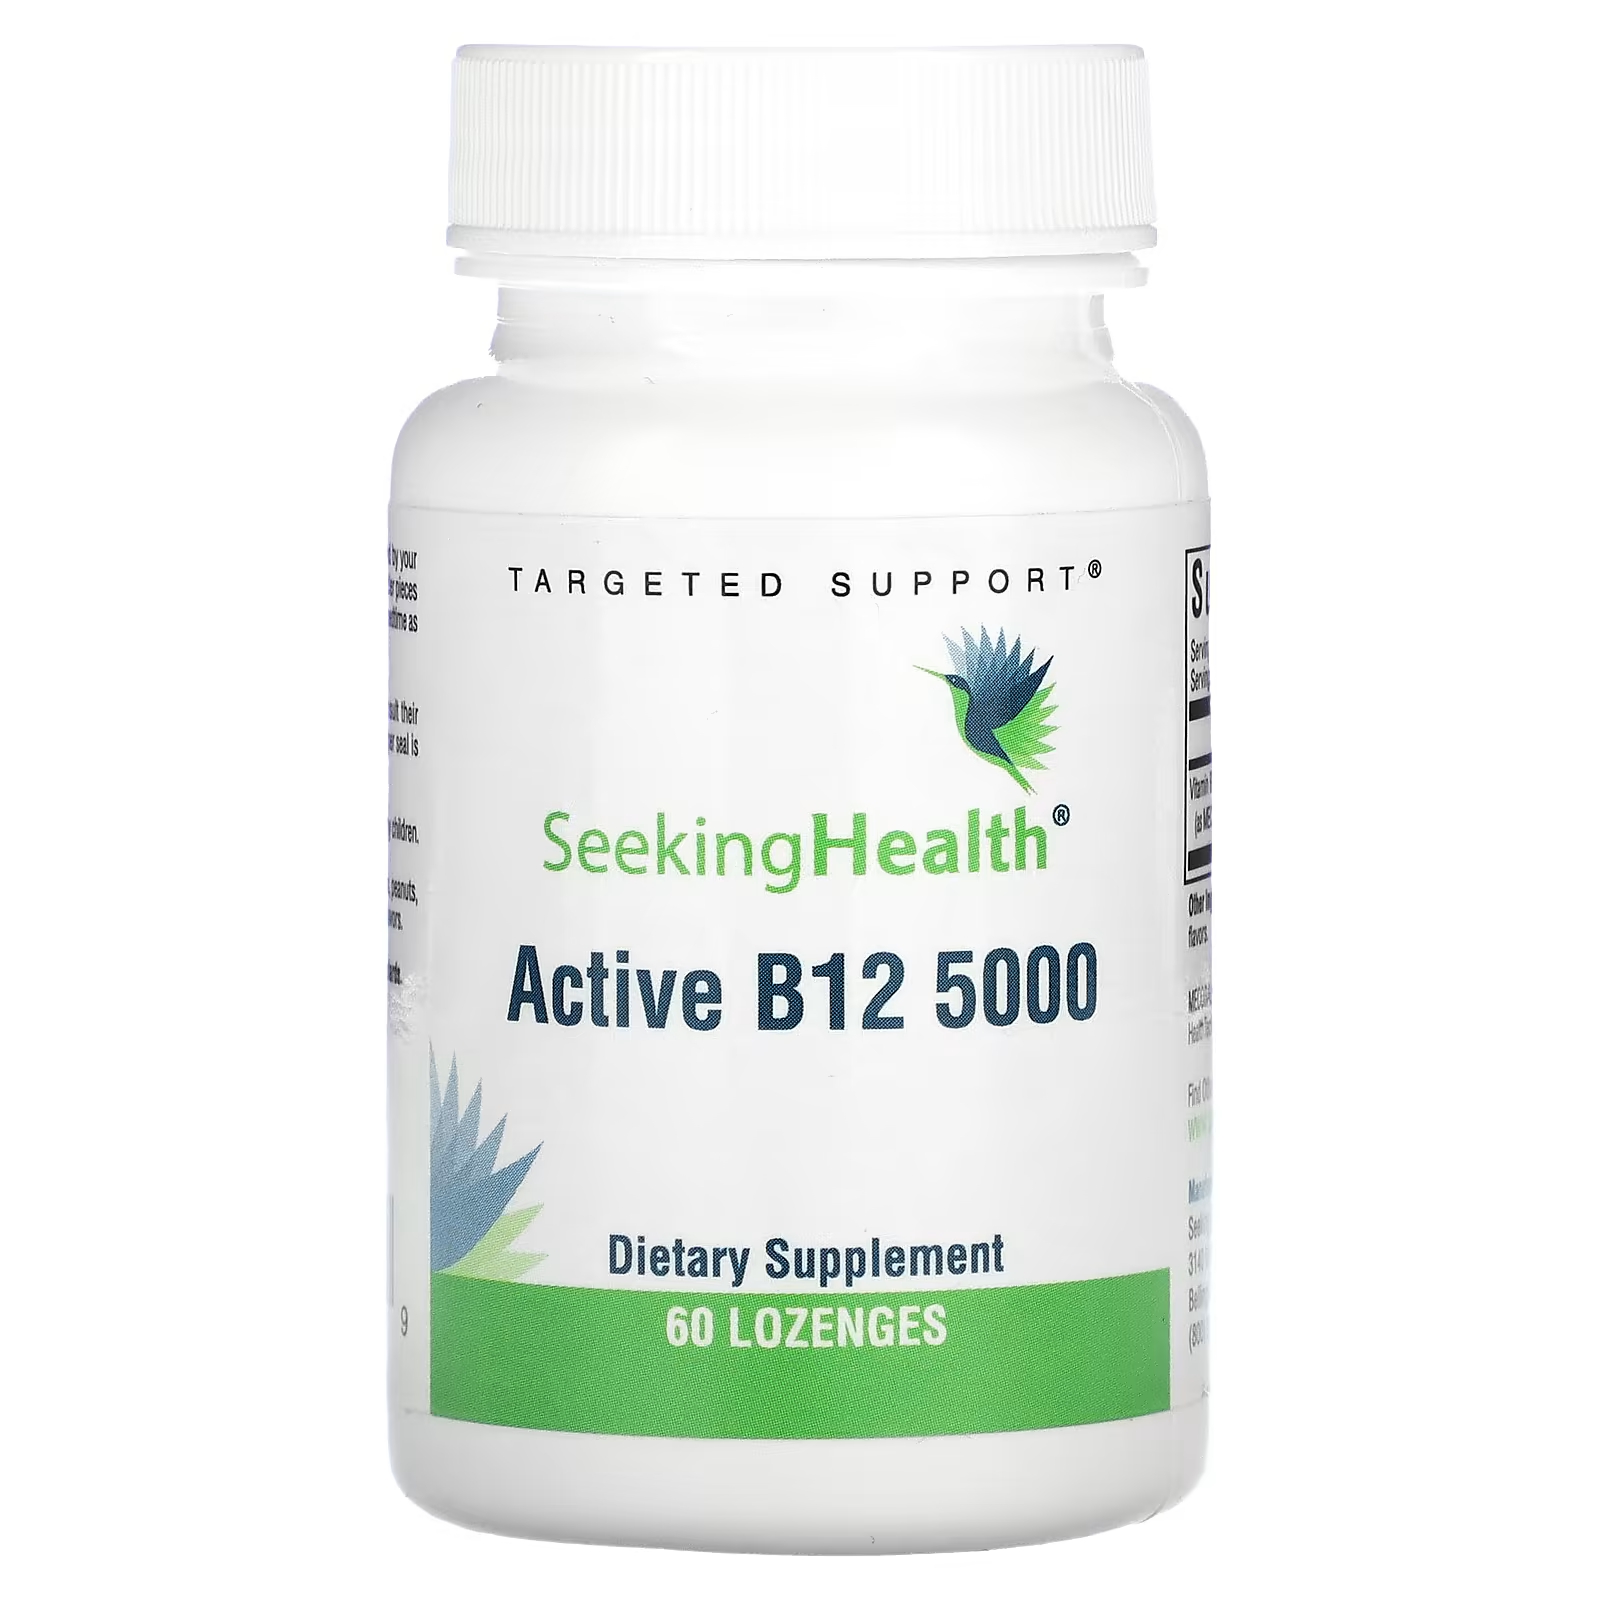 Биологически активная добавка Seeking Health Active B12 5000, 60 таблеток биологически активная добавка seeking health active b12 5000 60 таблеток